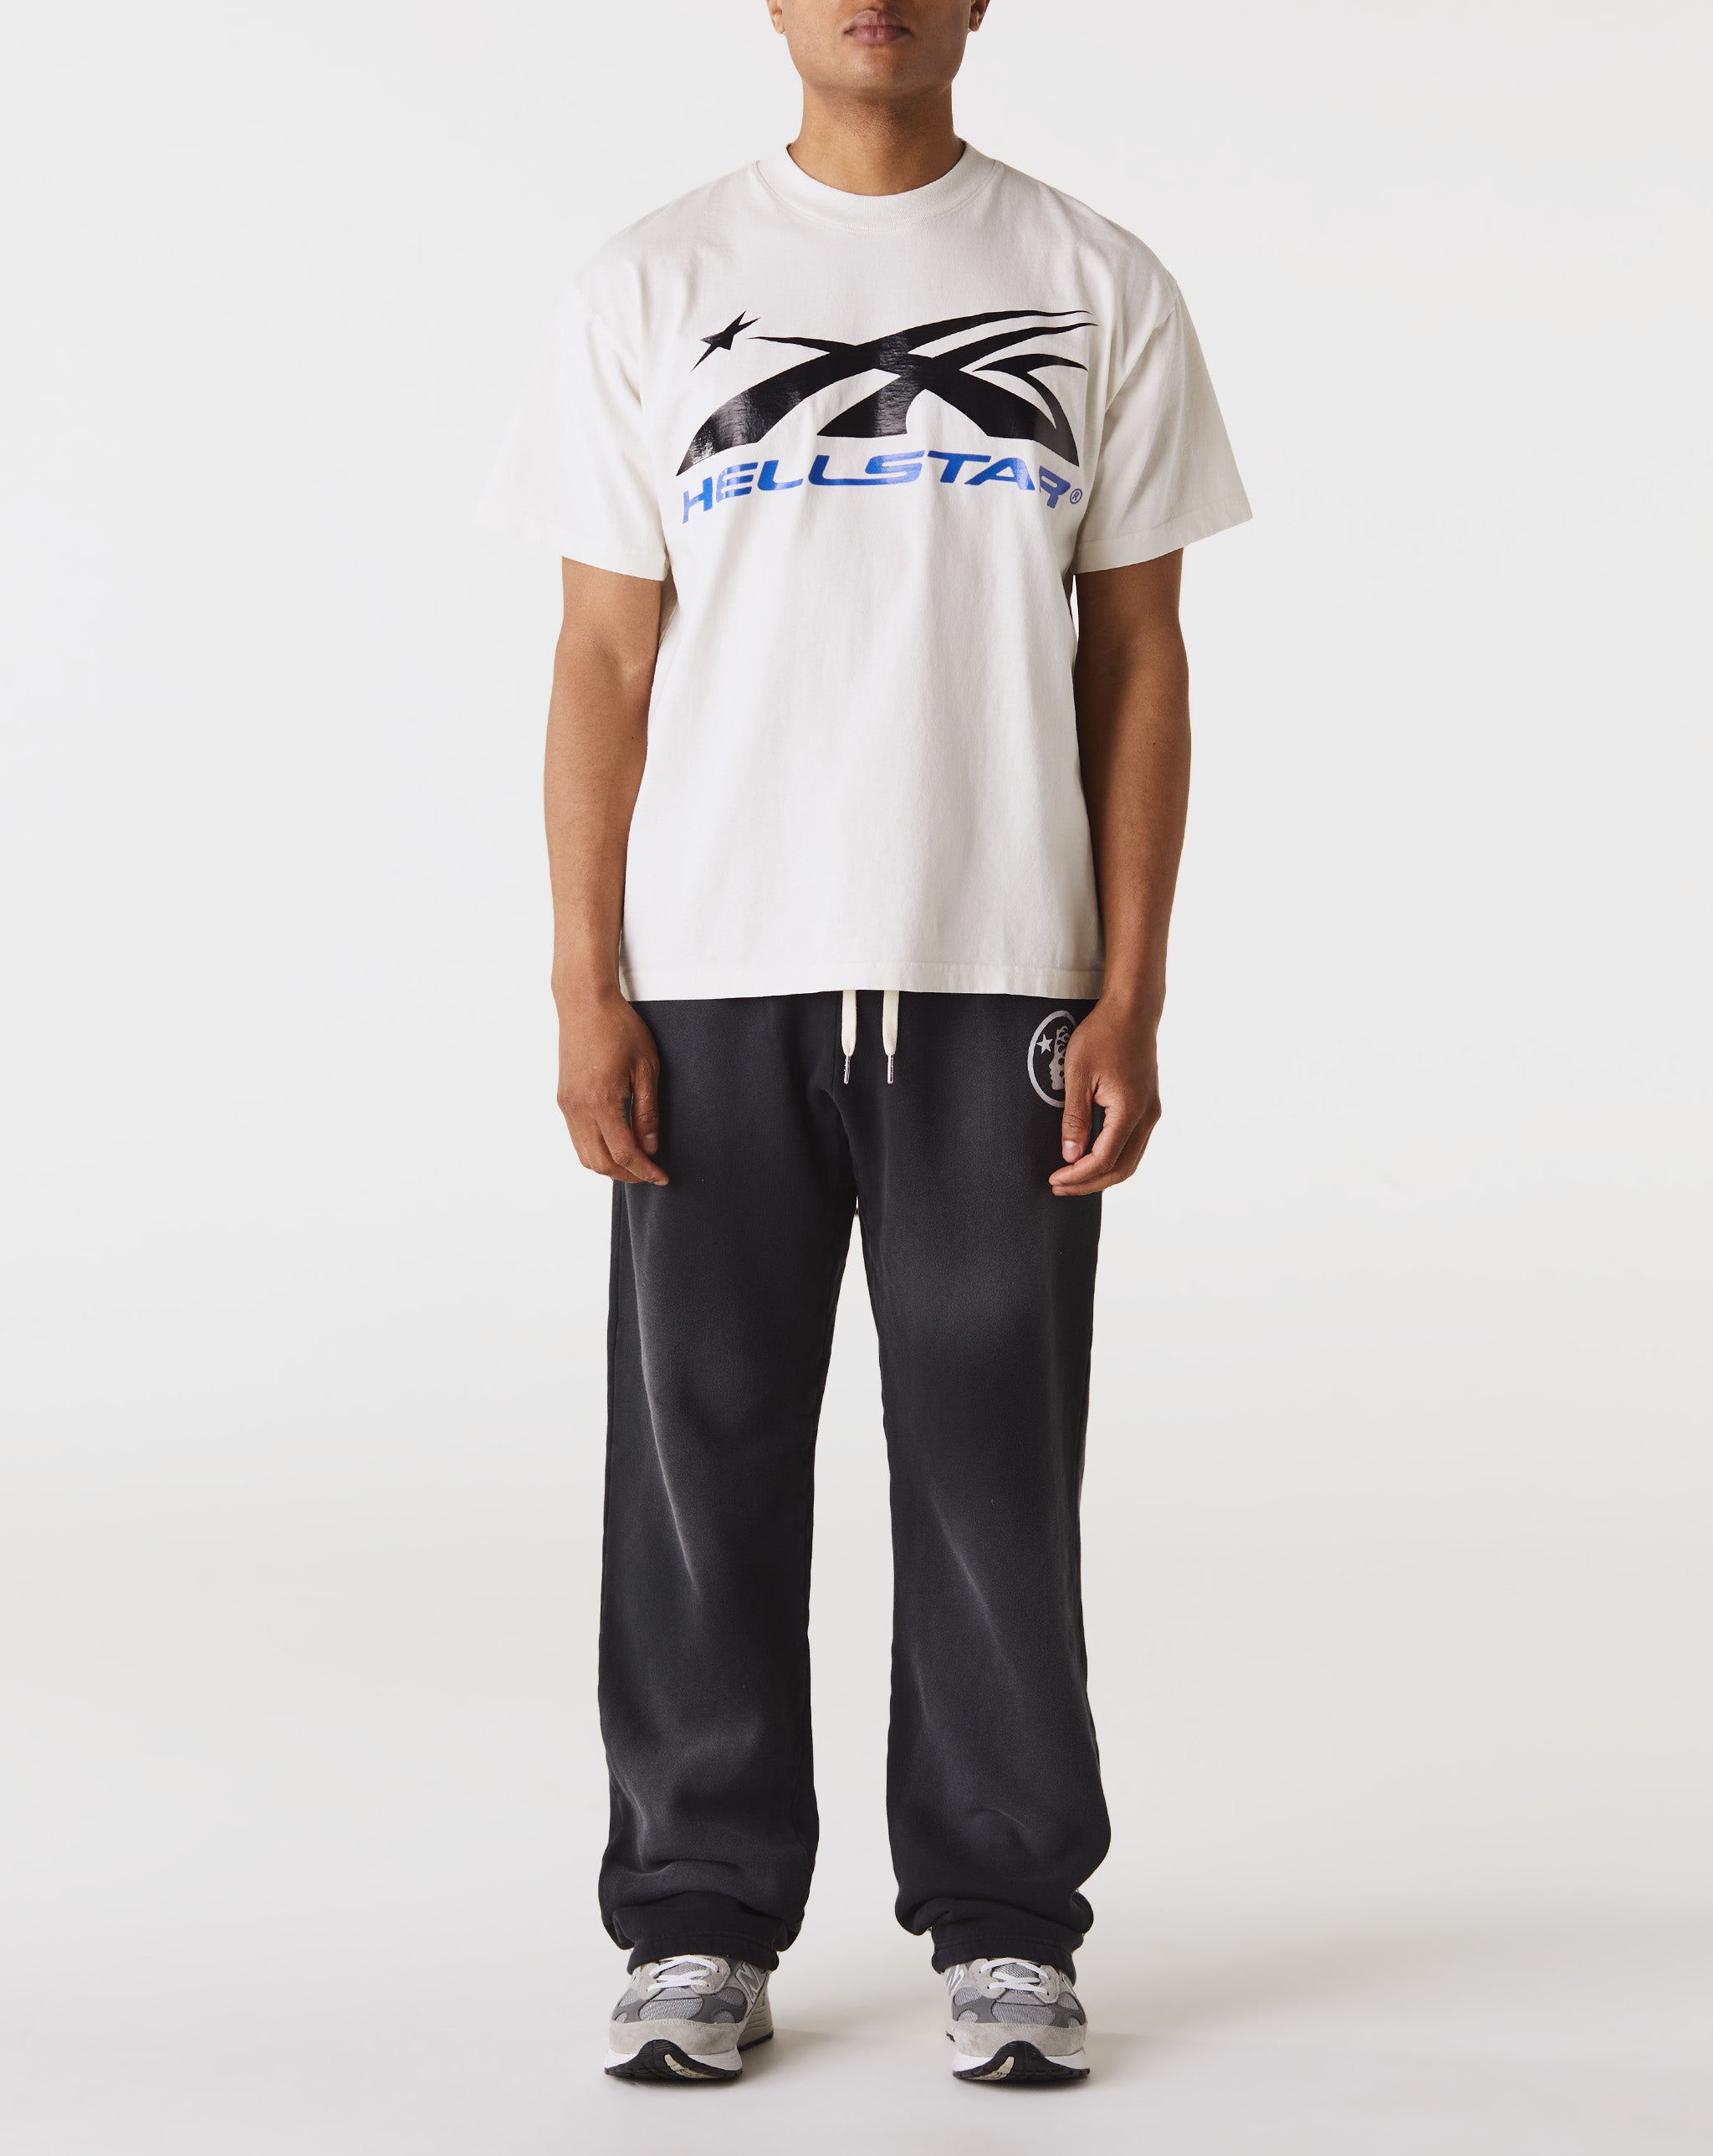 Hellstar Gel Sport Logo T-Shirt  - Cheap Erlebniswelt-fliegenfischen Jordan outlet